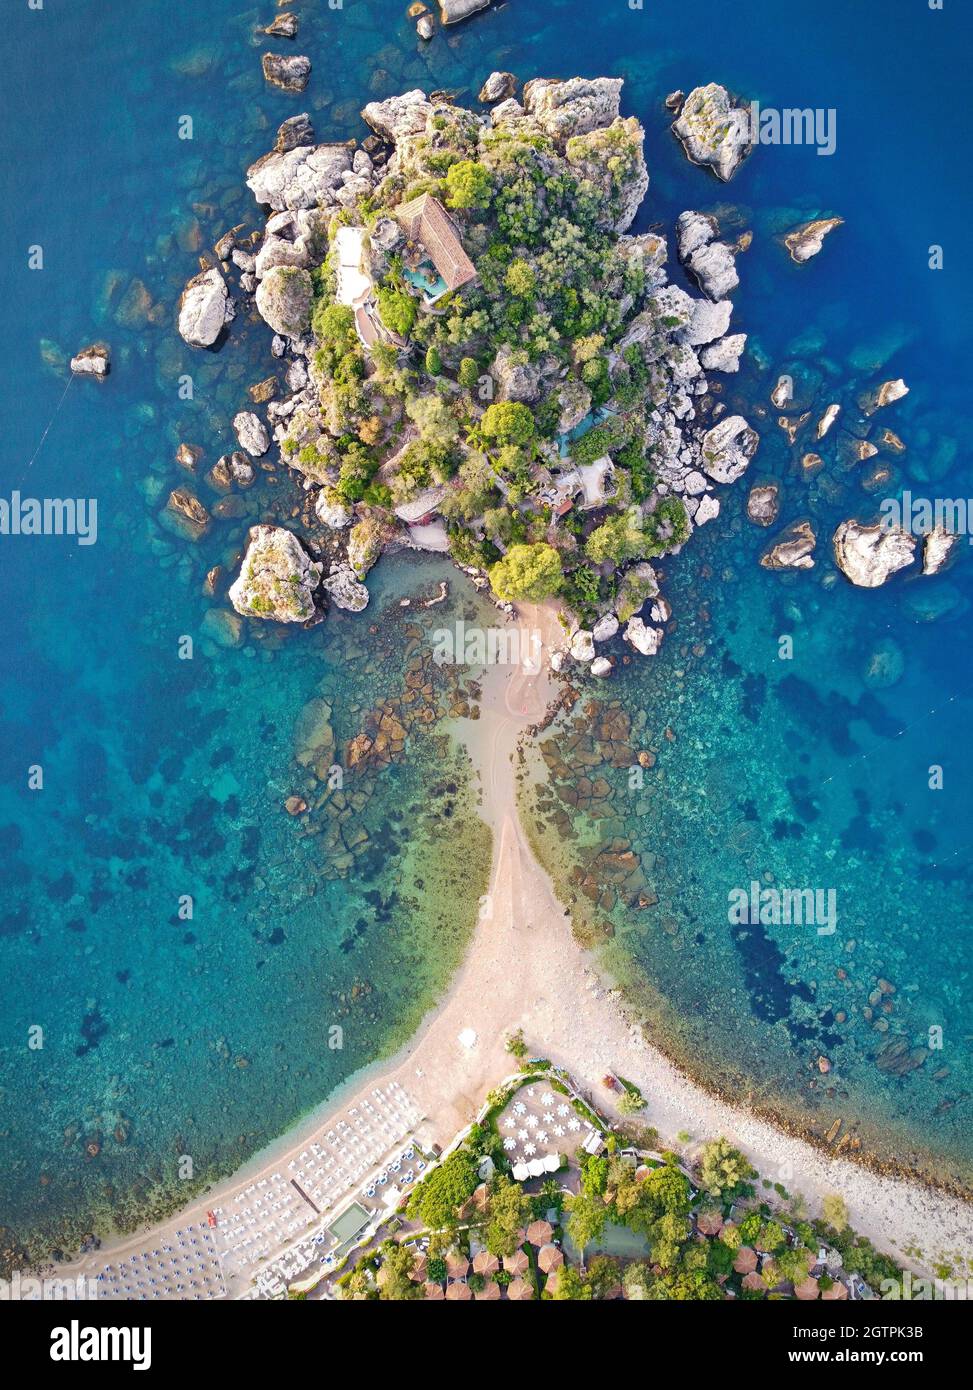 Isola Bella kleine Insel in der Nähe von Taormina, Sizilien, Süditalien. Ein enger Pfad verbindet die Insel Isola Bella mit dem azurblauen Strand auf dem Festland von Taormina Stockfoto